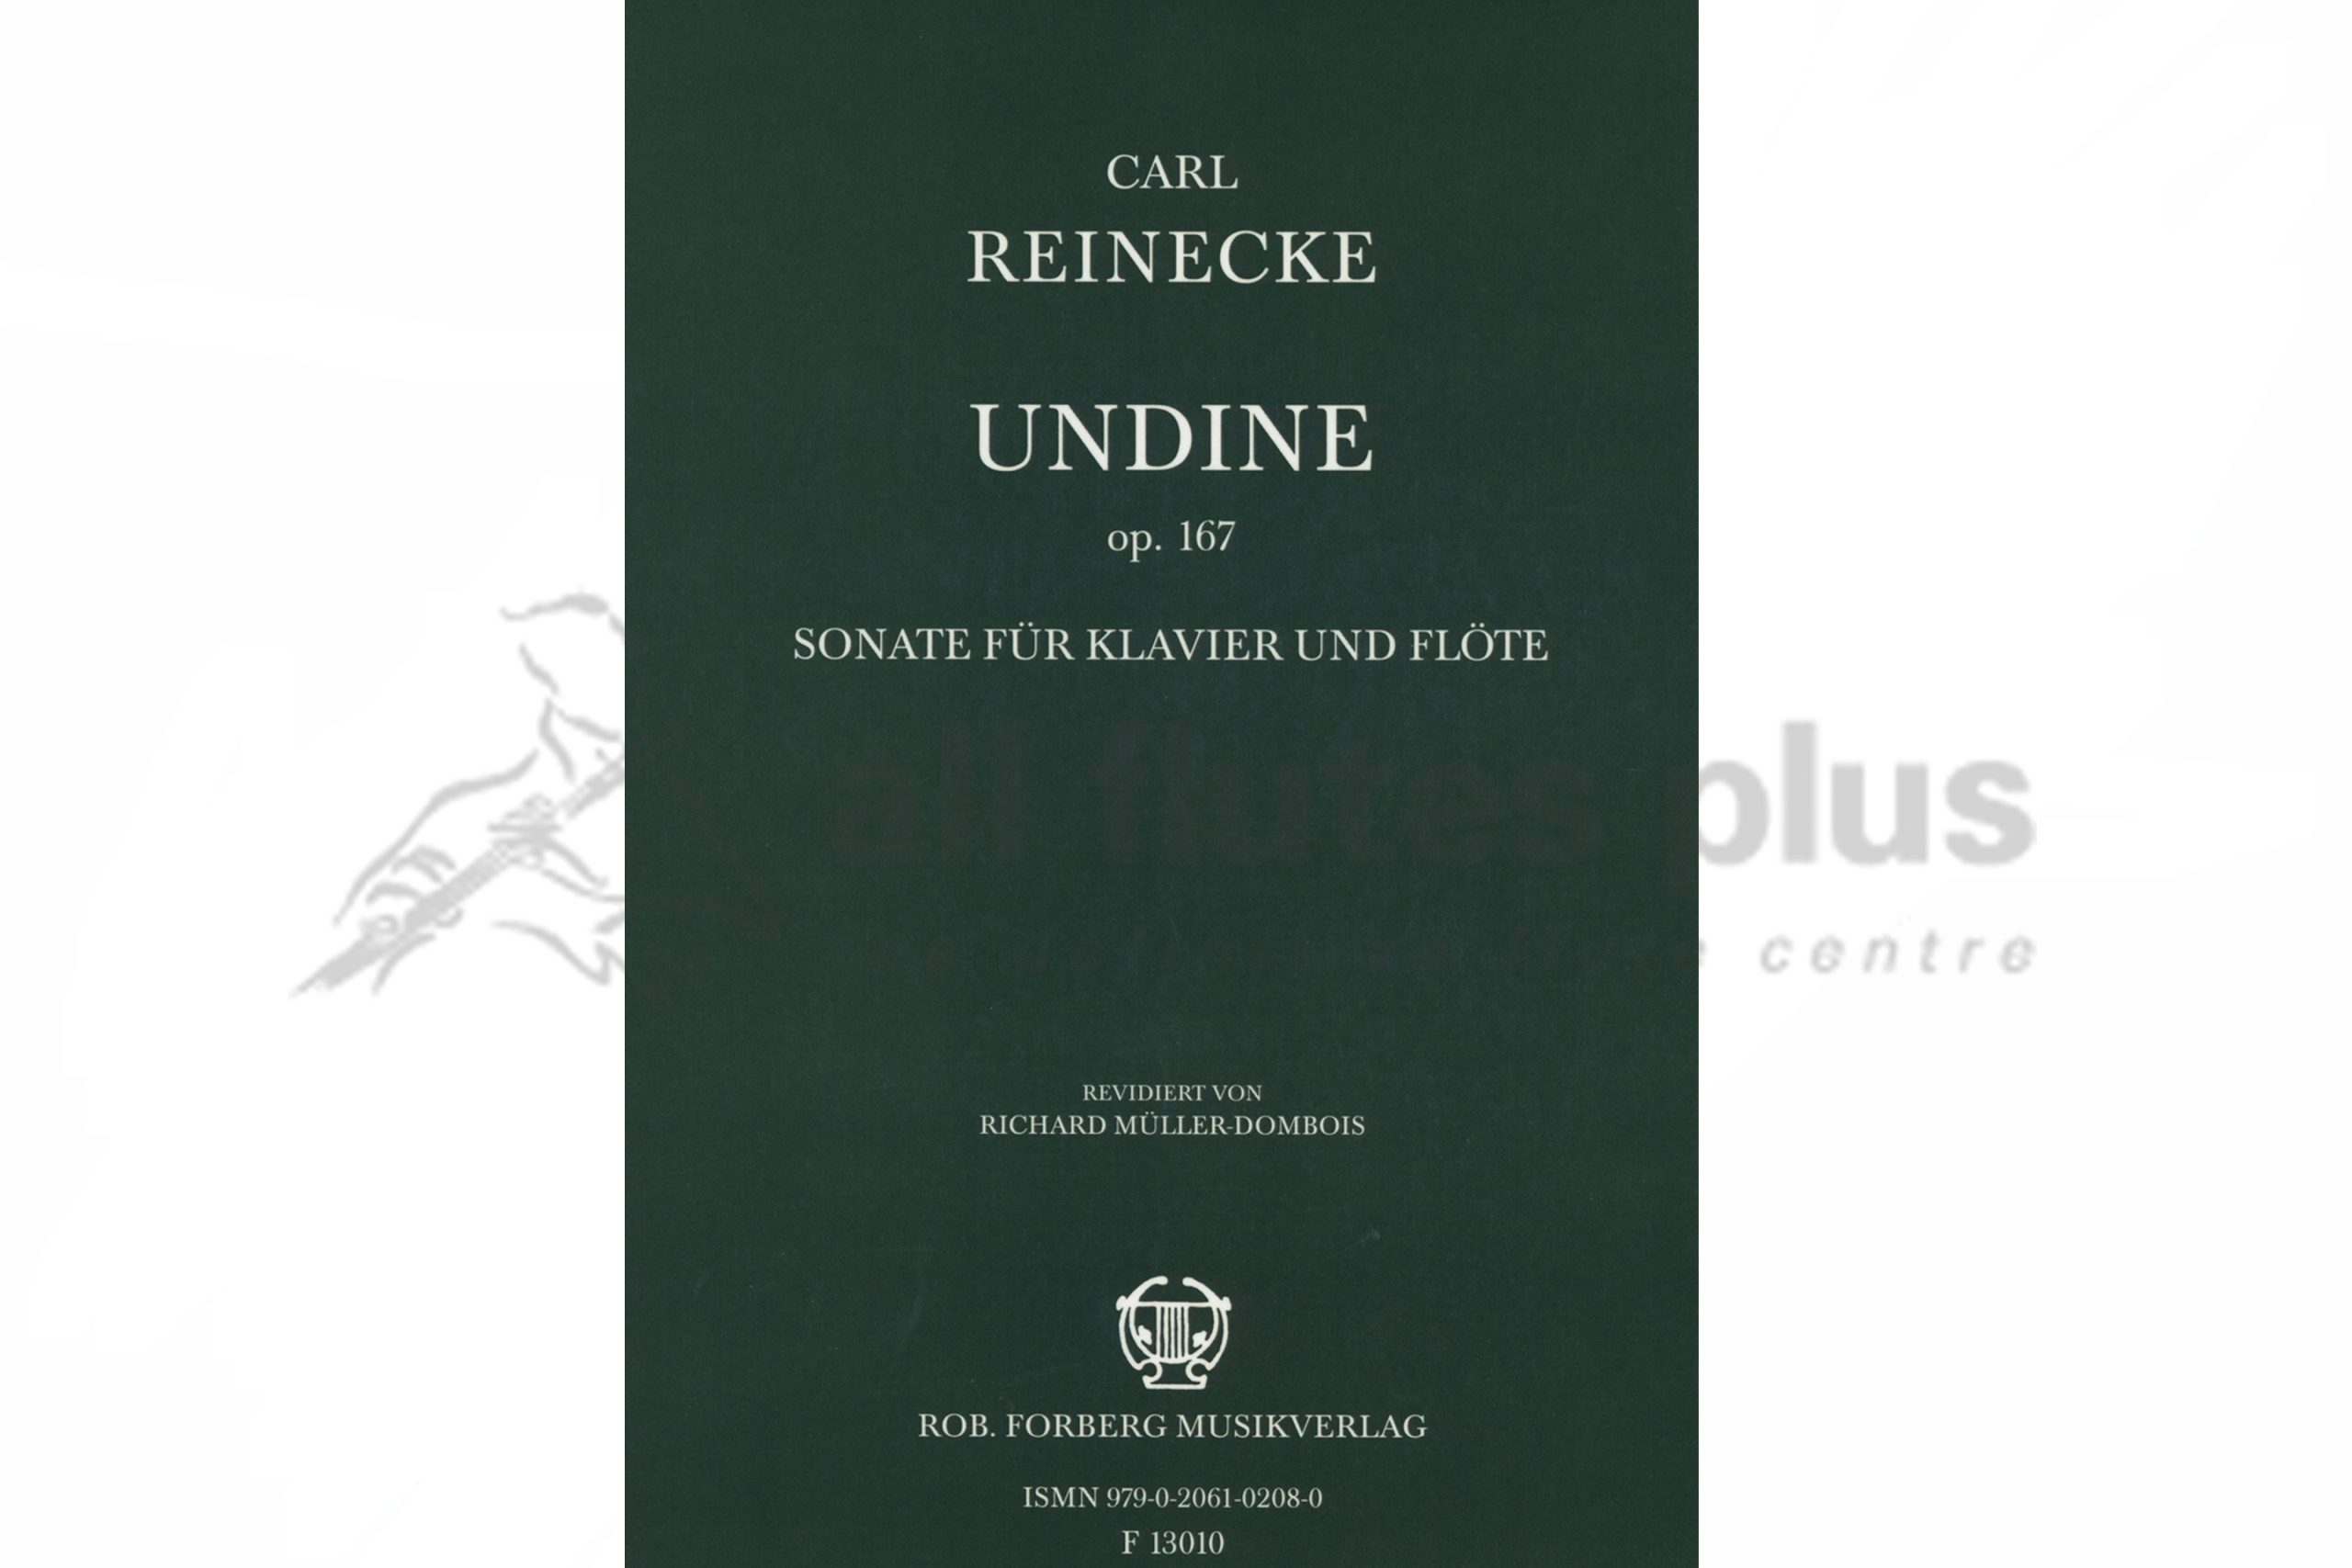 Reinecke Undine Sonata Op 167 for Flute & Piano